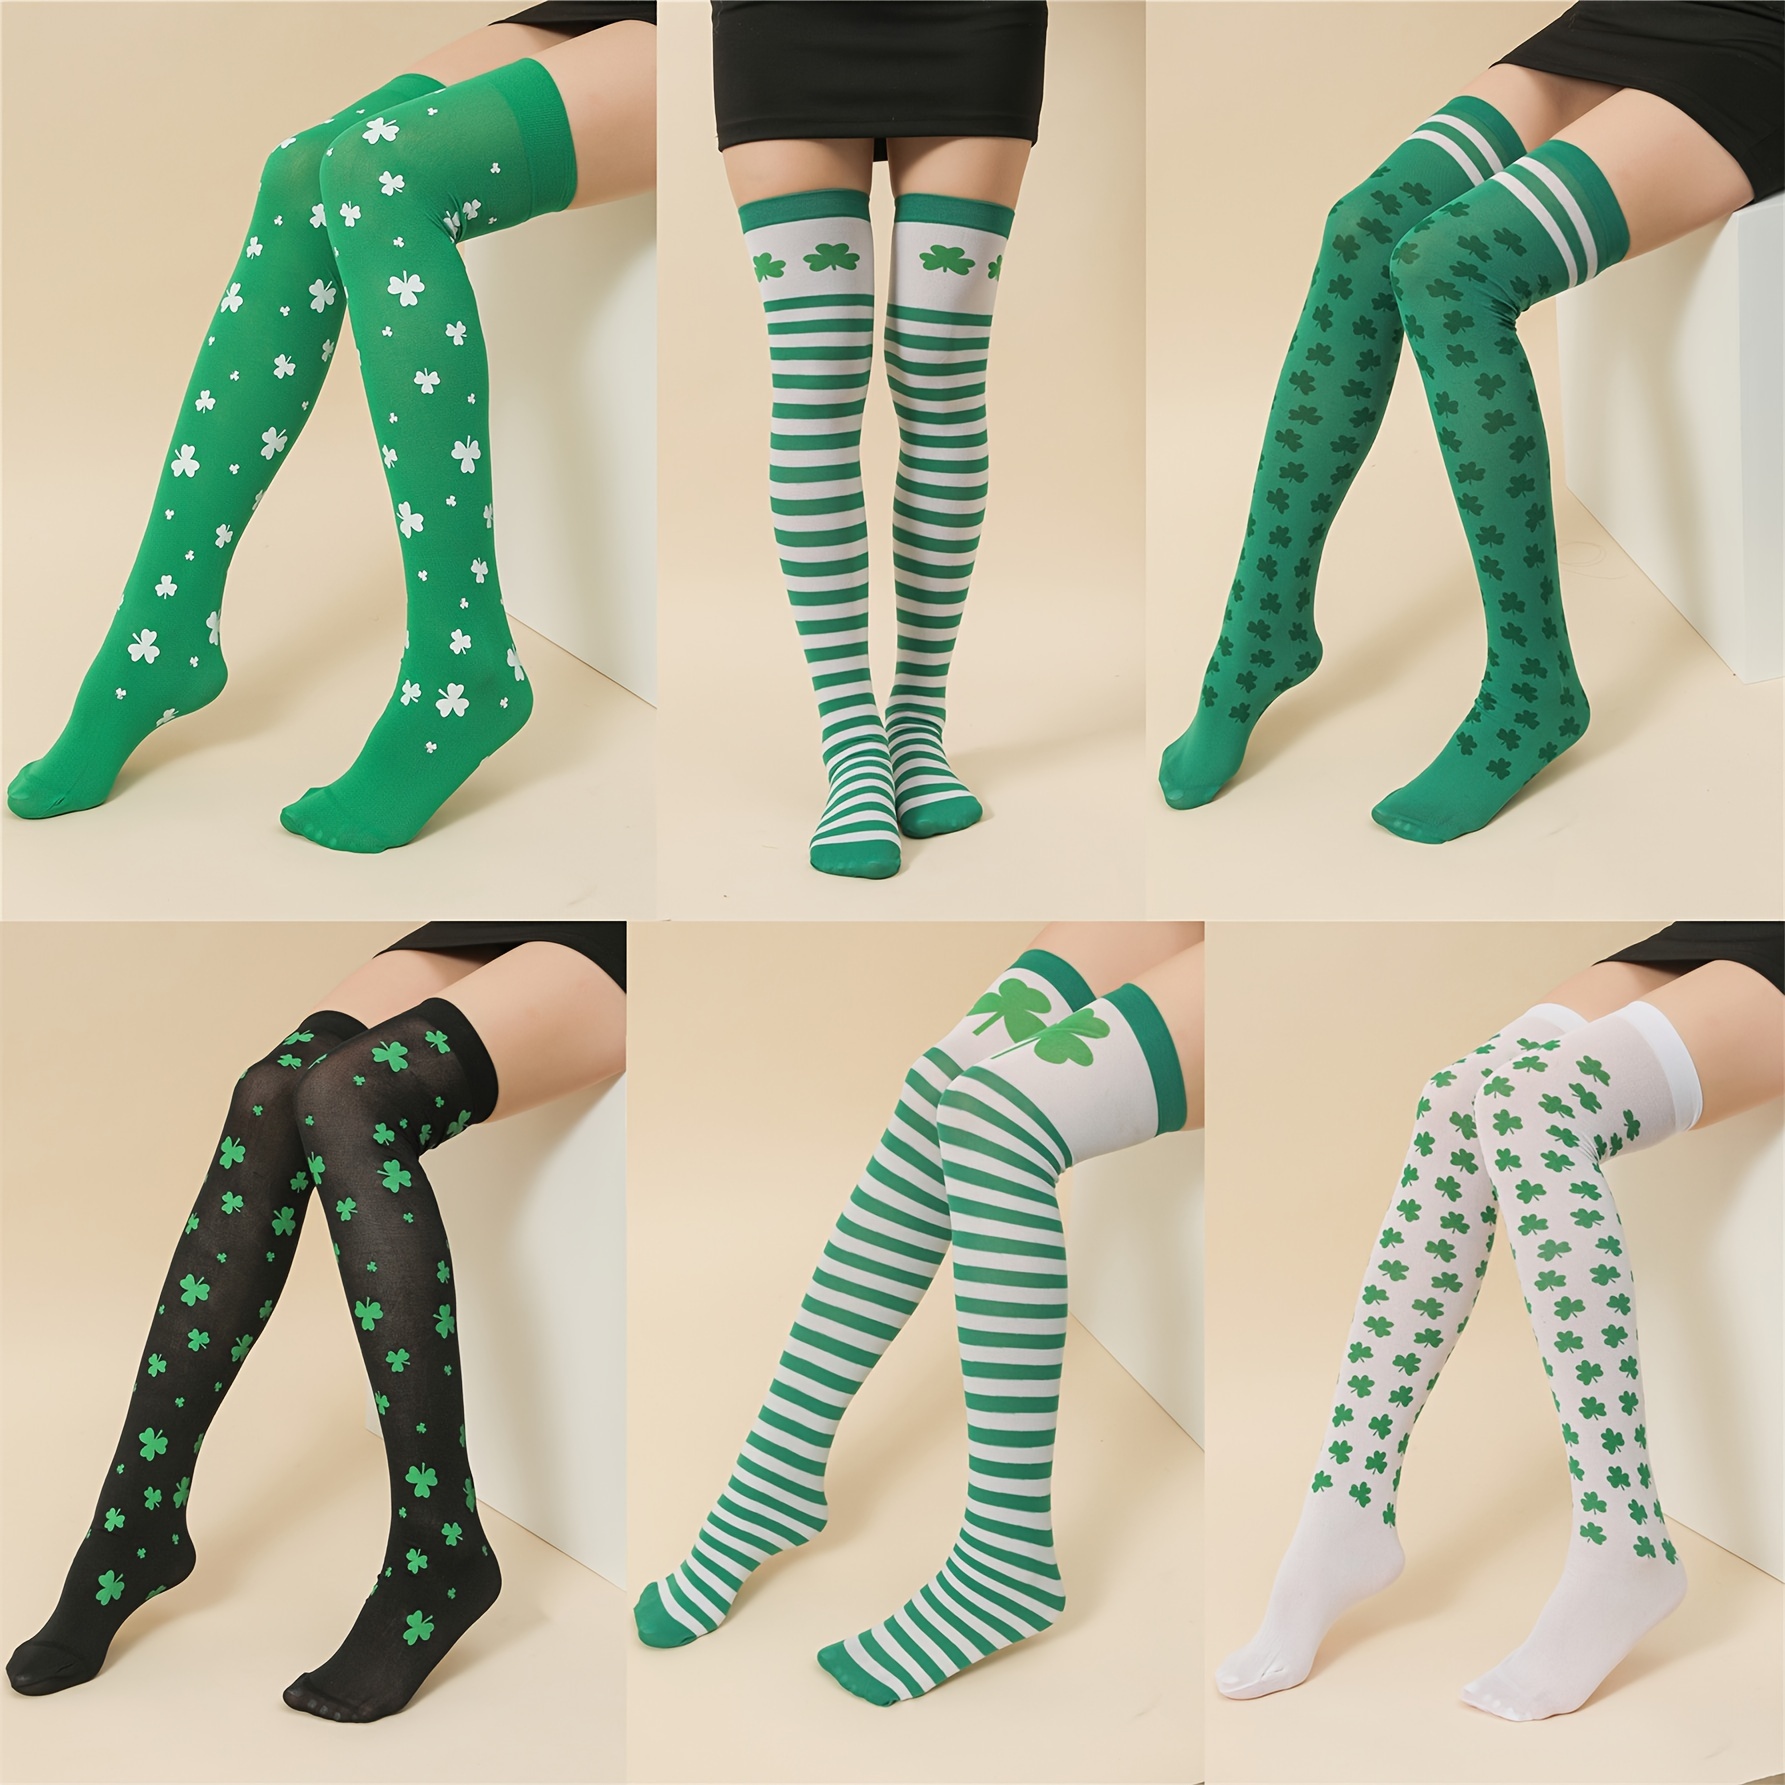  Girls' Tights - Greens / Girls' Tights / Girls' Socks